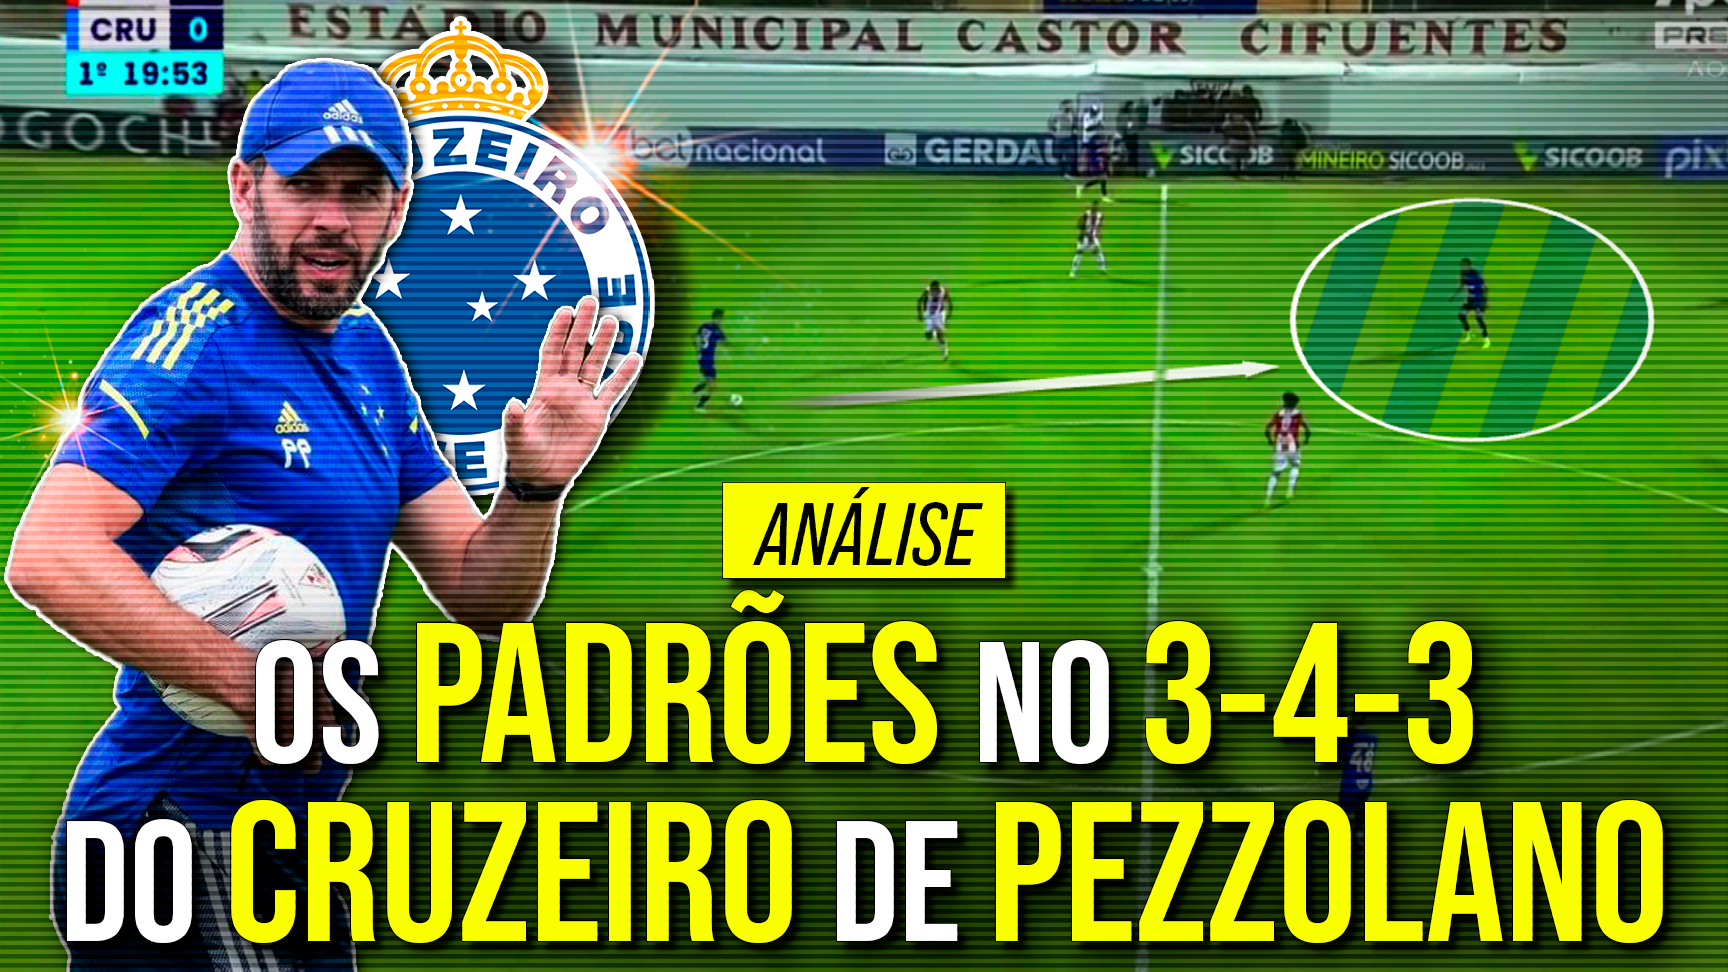 A tática do Cruzeiro de Pezzolano no início da temporada